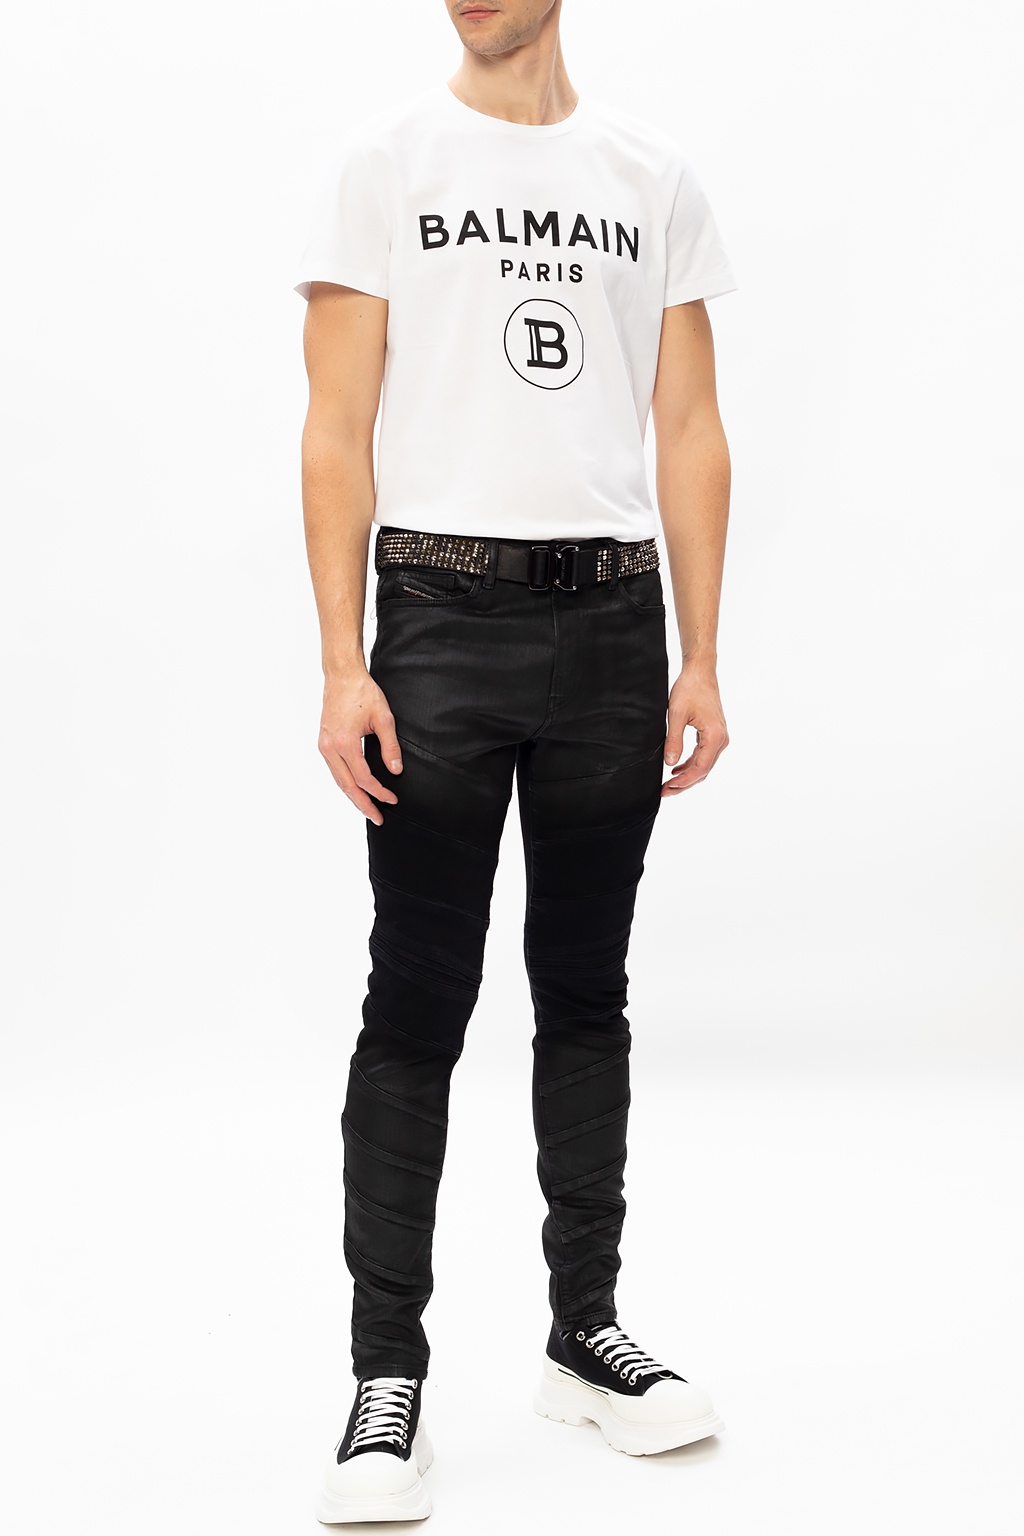 Balmain T-shirt with logo | Men's Clothing | IetpShops